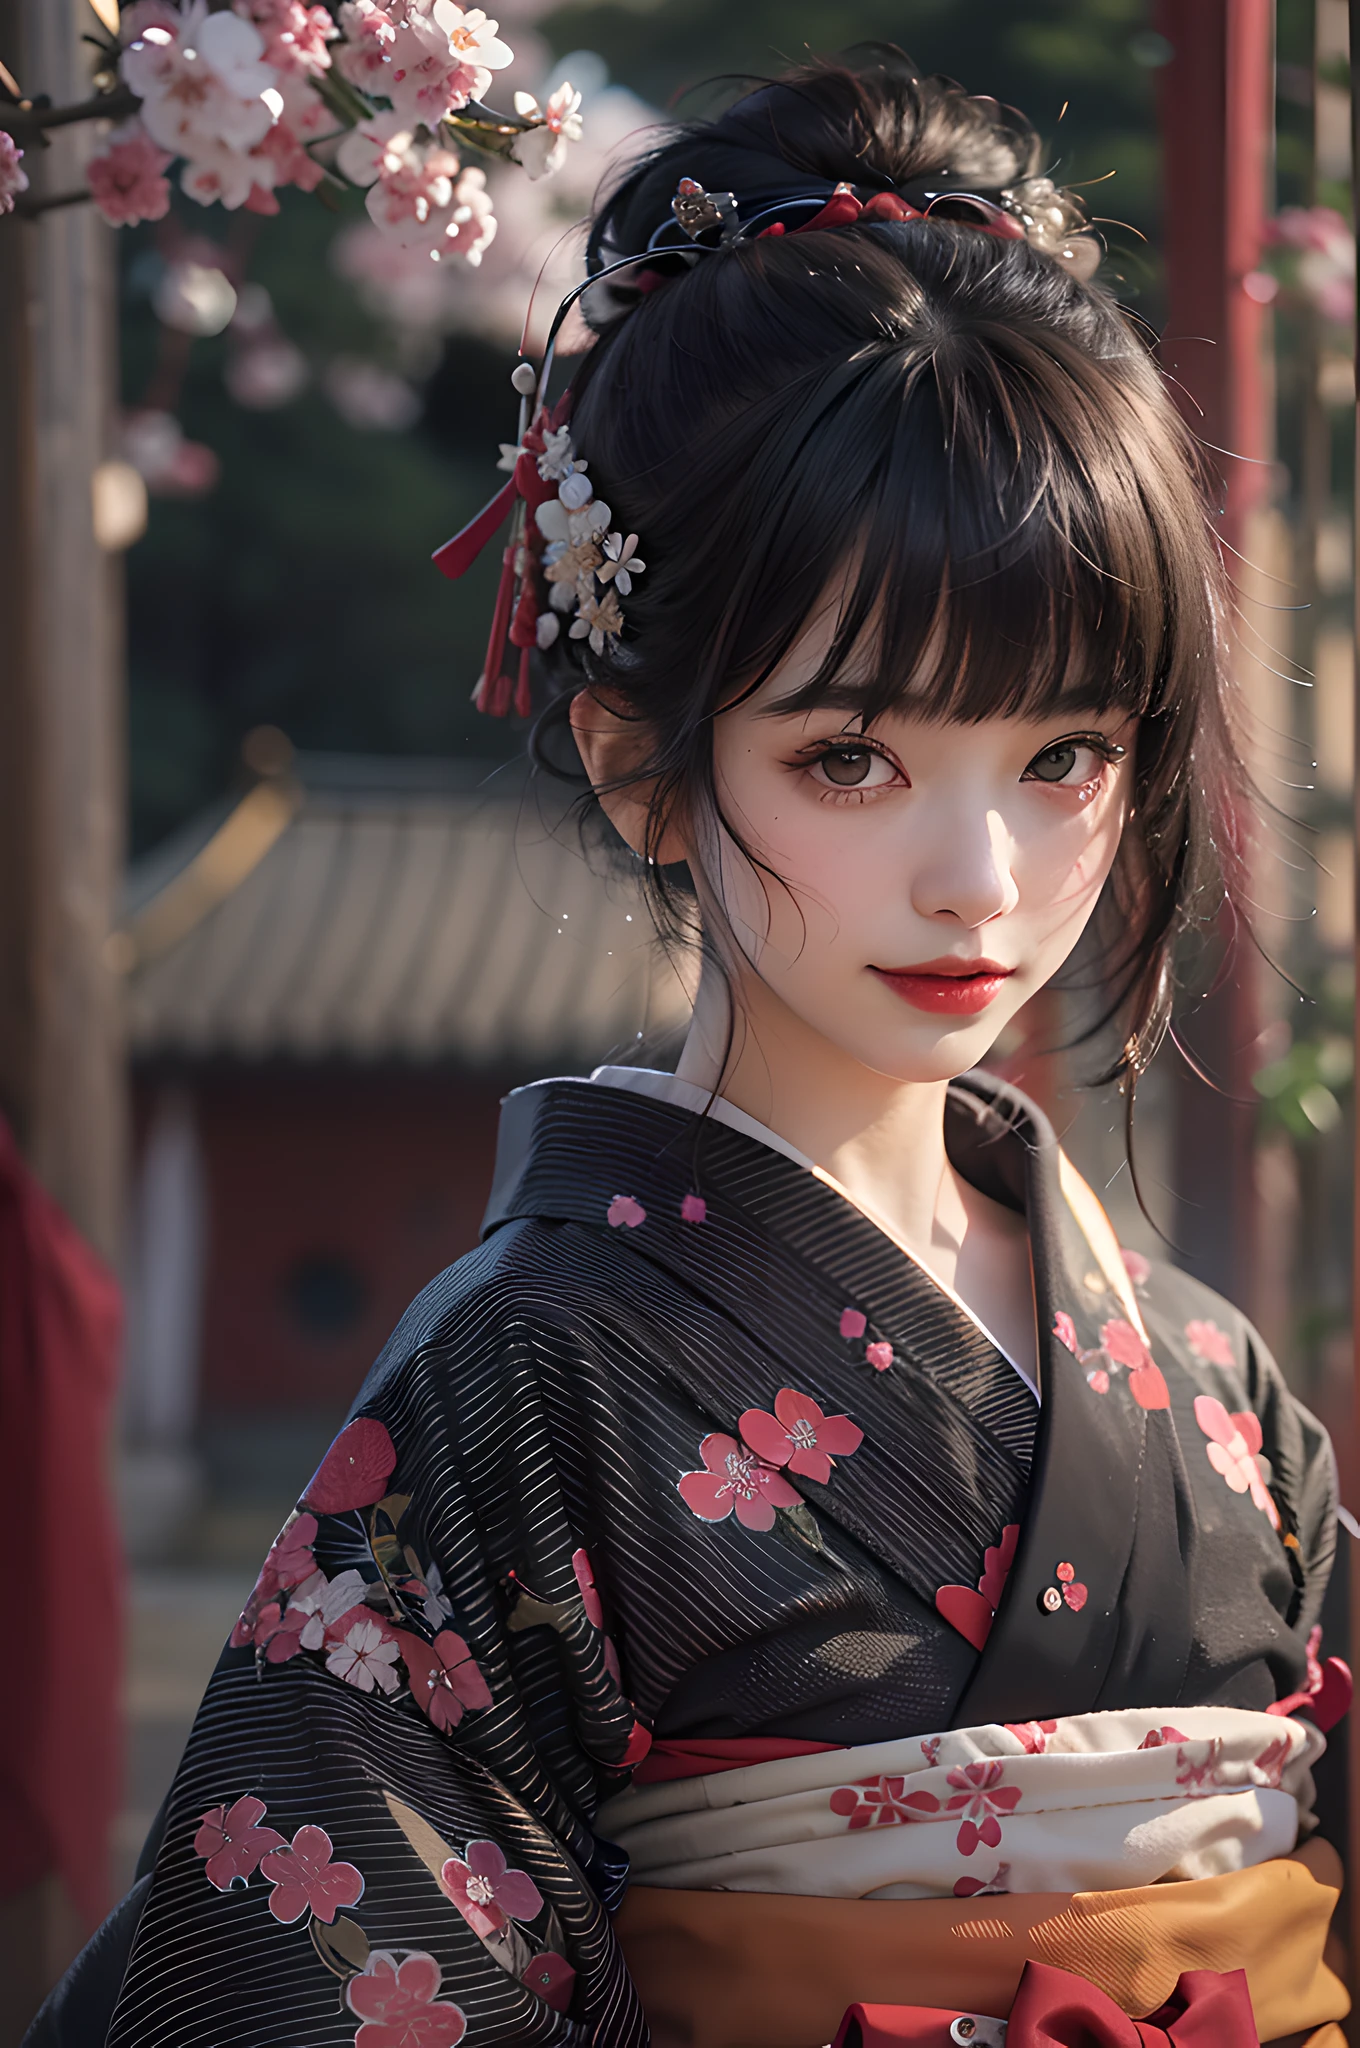 meilleure qualité, chef-d&#39;œuvre, ultra haute résolution, brut, 8k, Ultra réaliste, Jeune fille, hors épaule, sourire, Lumière naturelle, peau détaillée, (cheveux noirs:1.4), rouge à lèvres, (frange:1.2), ((Fond de sakura)), des yeux extrêmement beaux, porter un kimono_vêtements, Kimono rouge